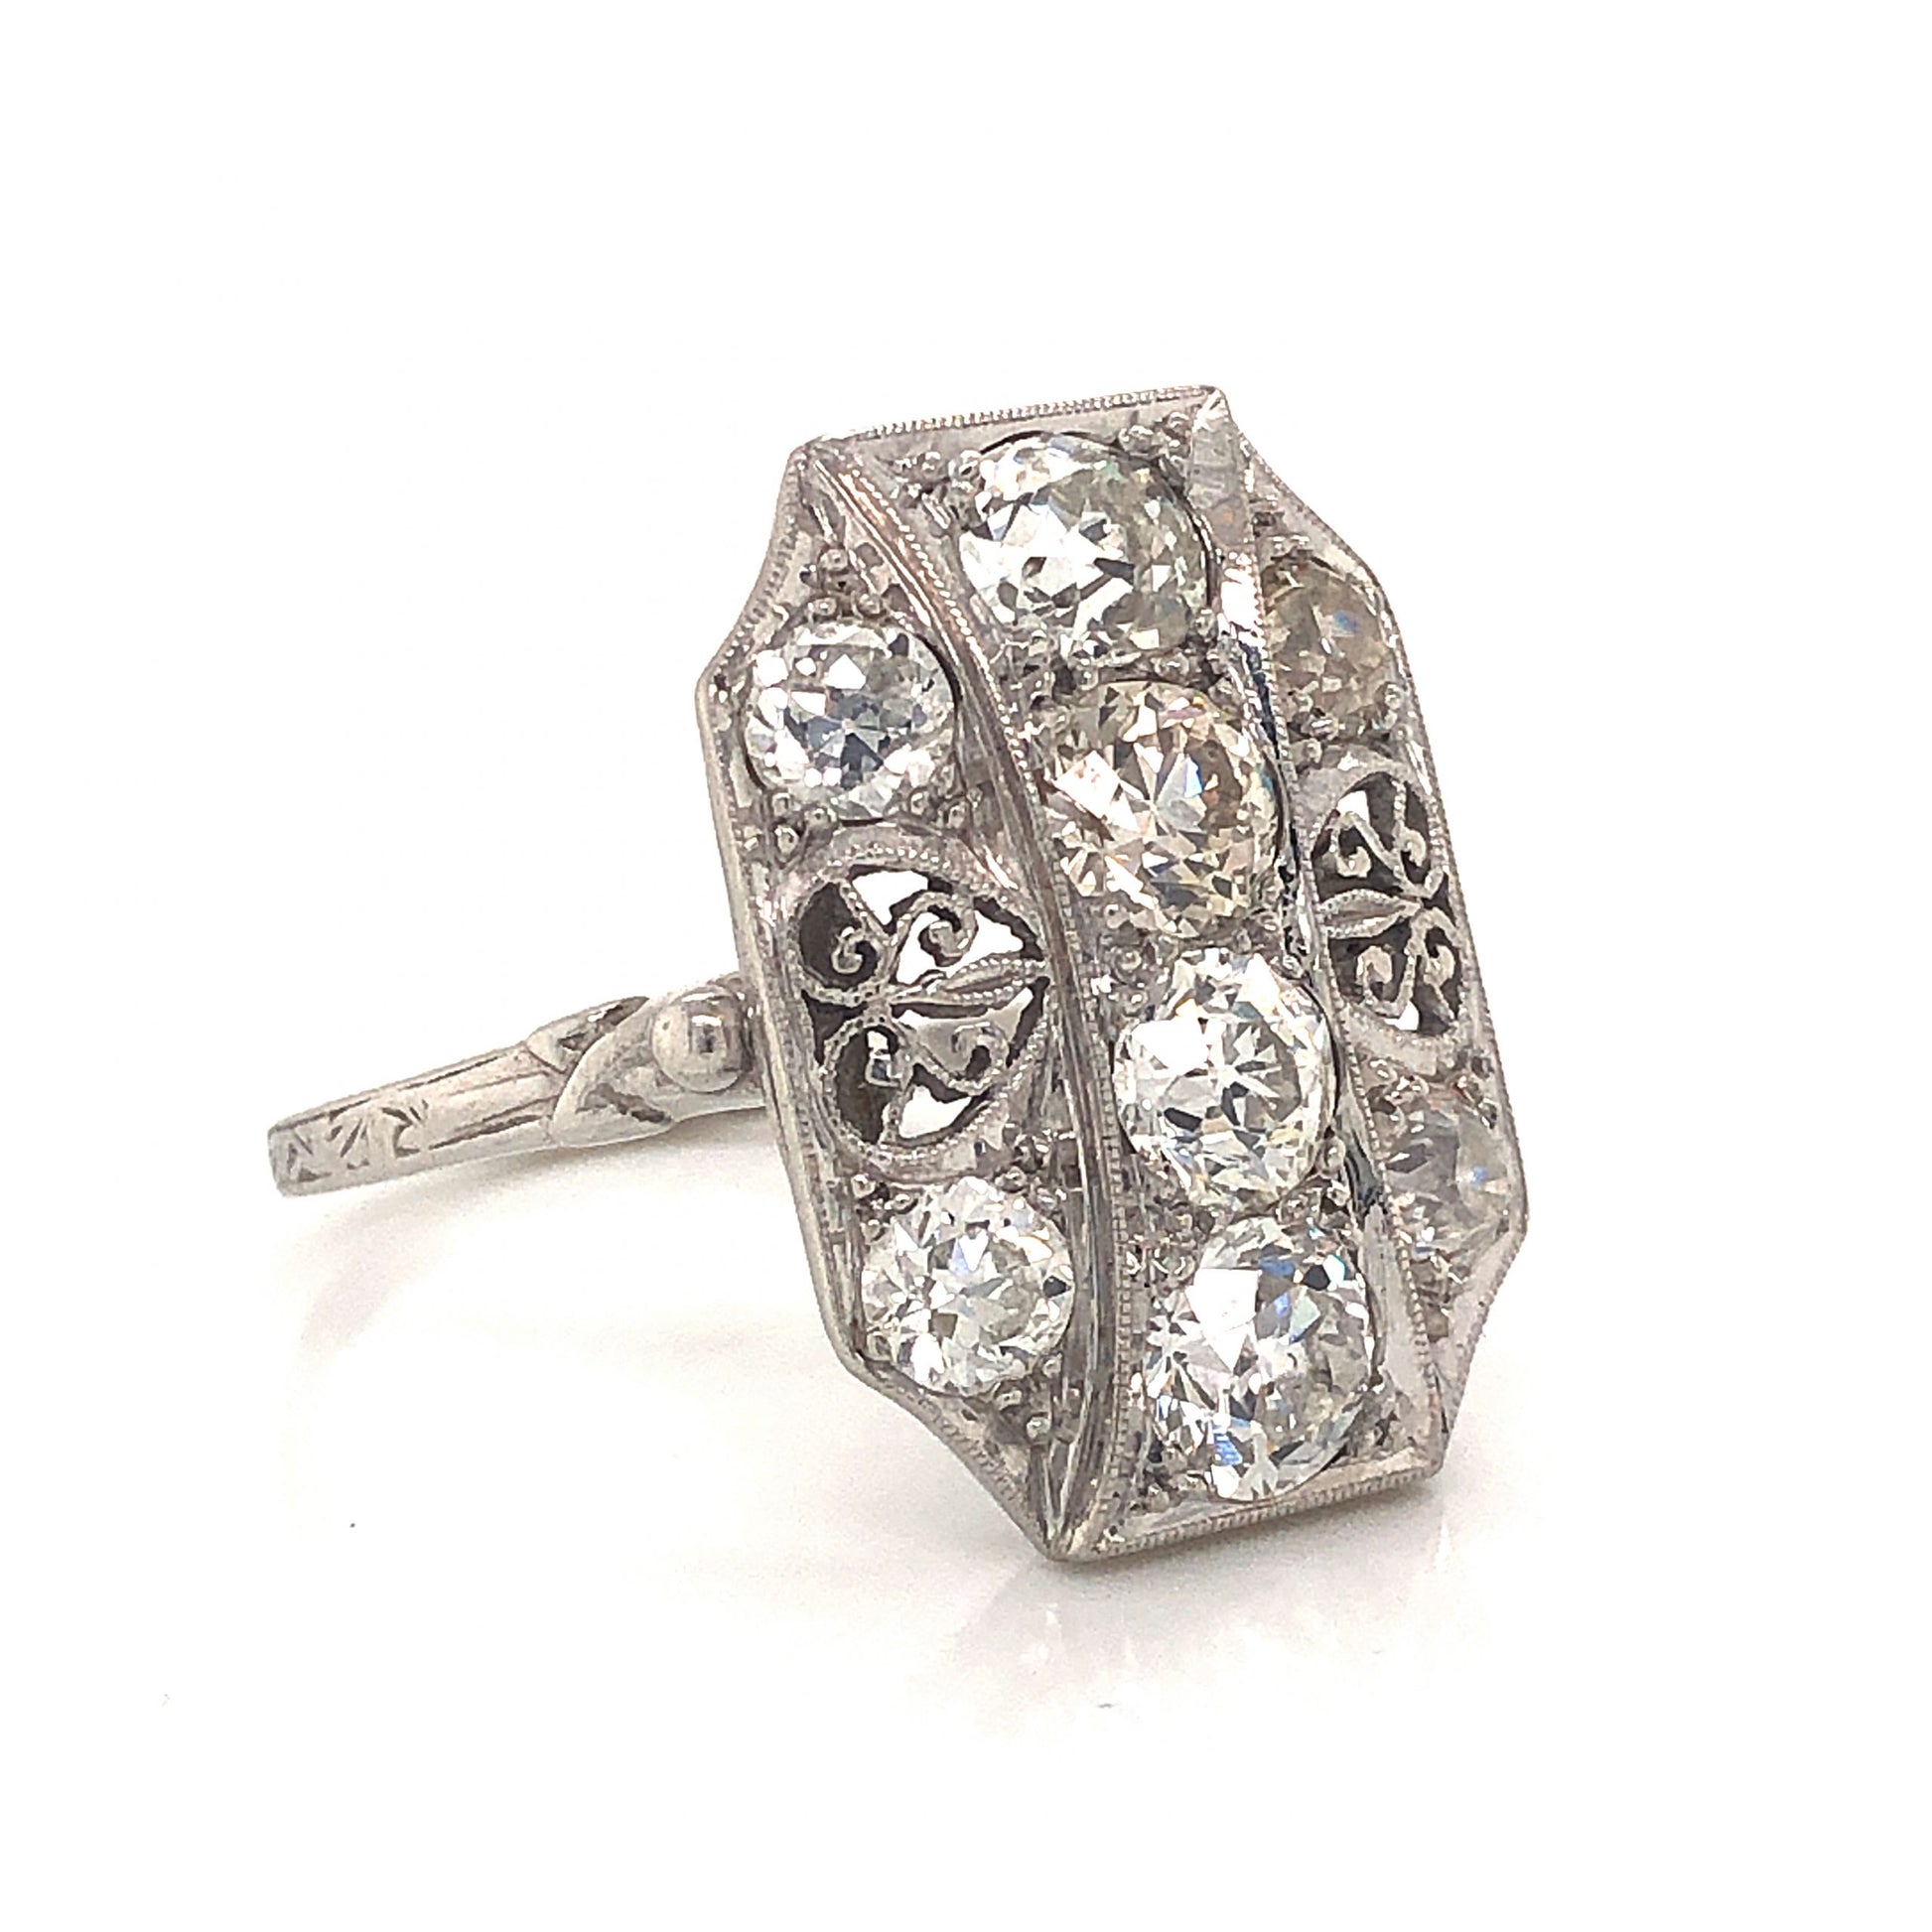 2.32 Art Deco Diamond Filigree Cocktail Ring in Platinum